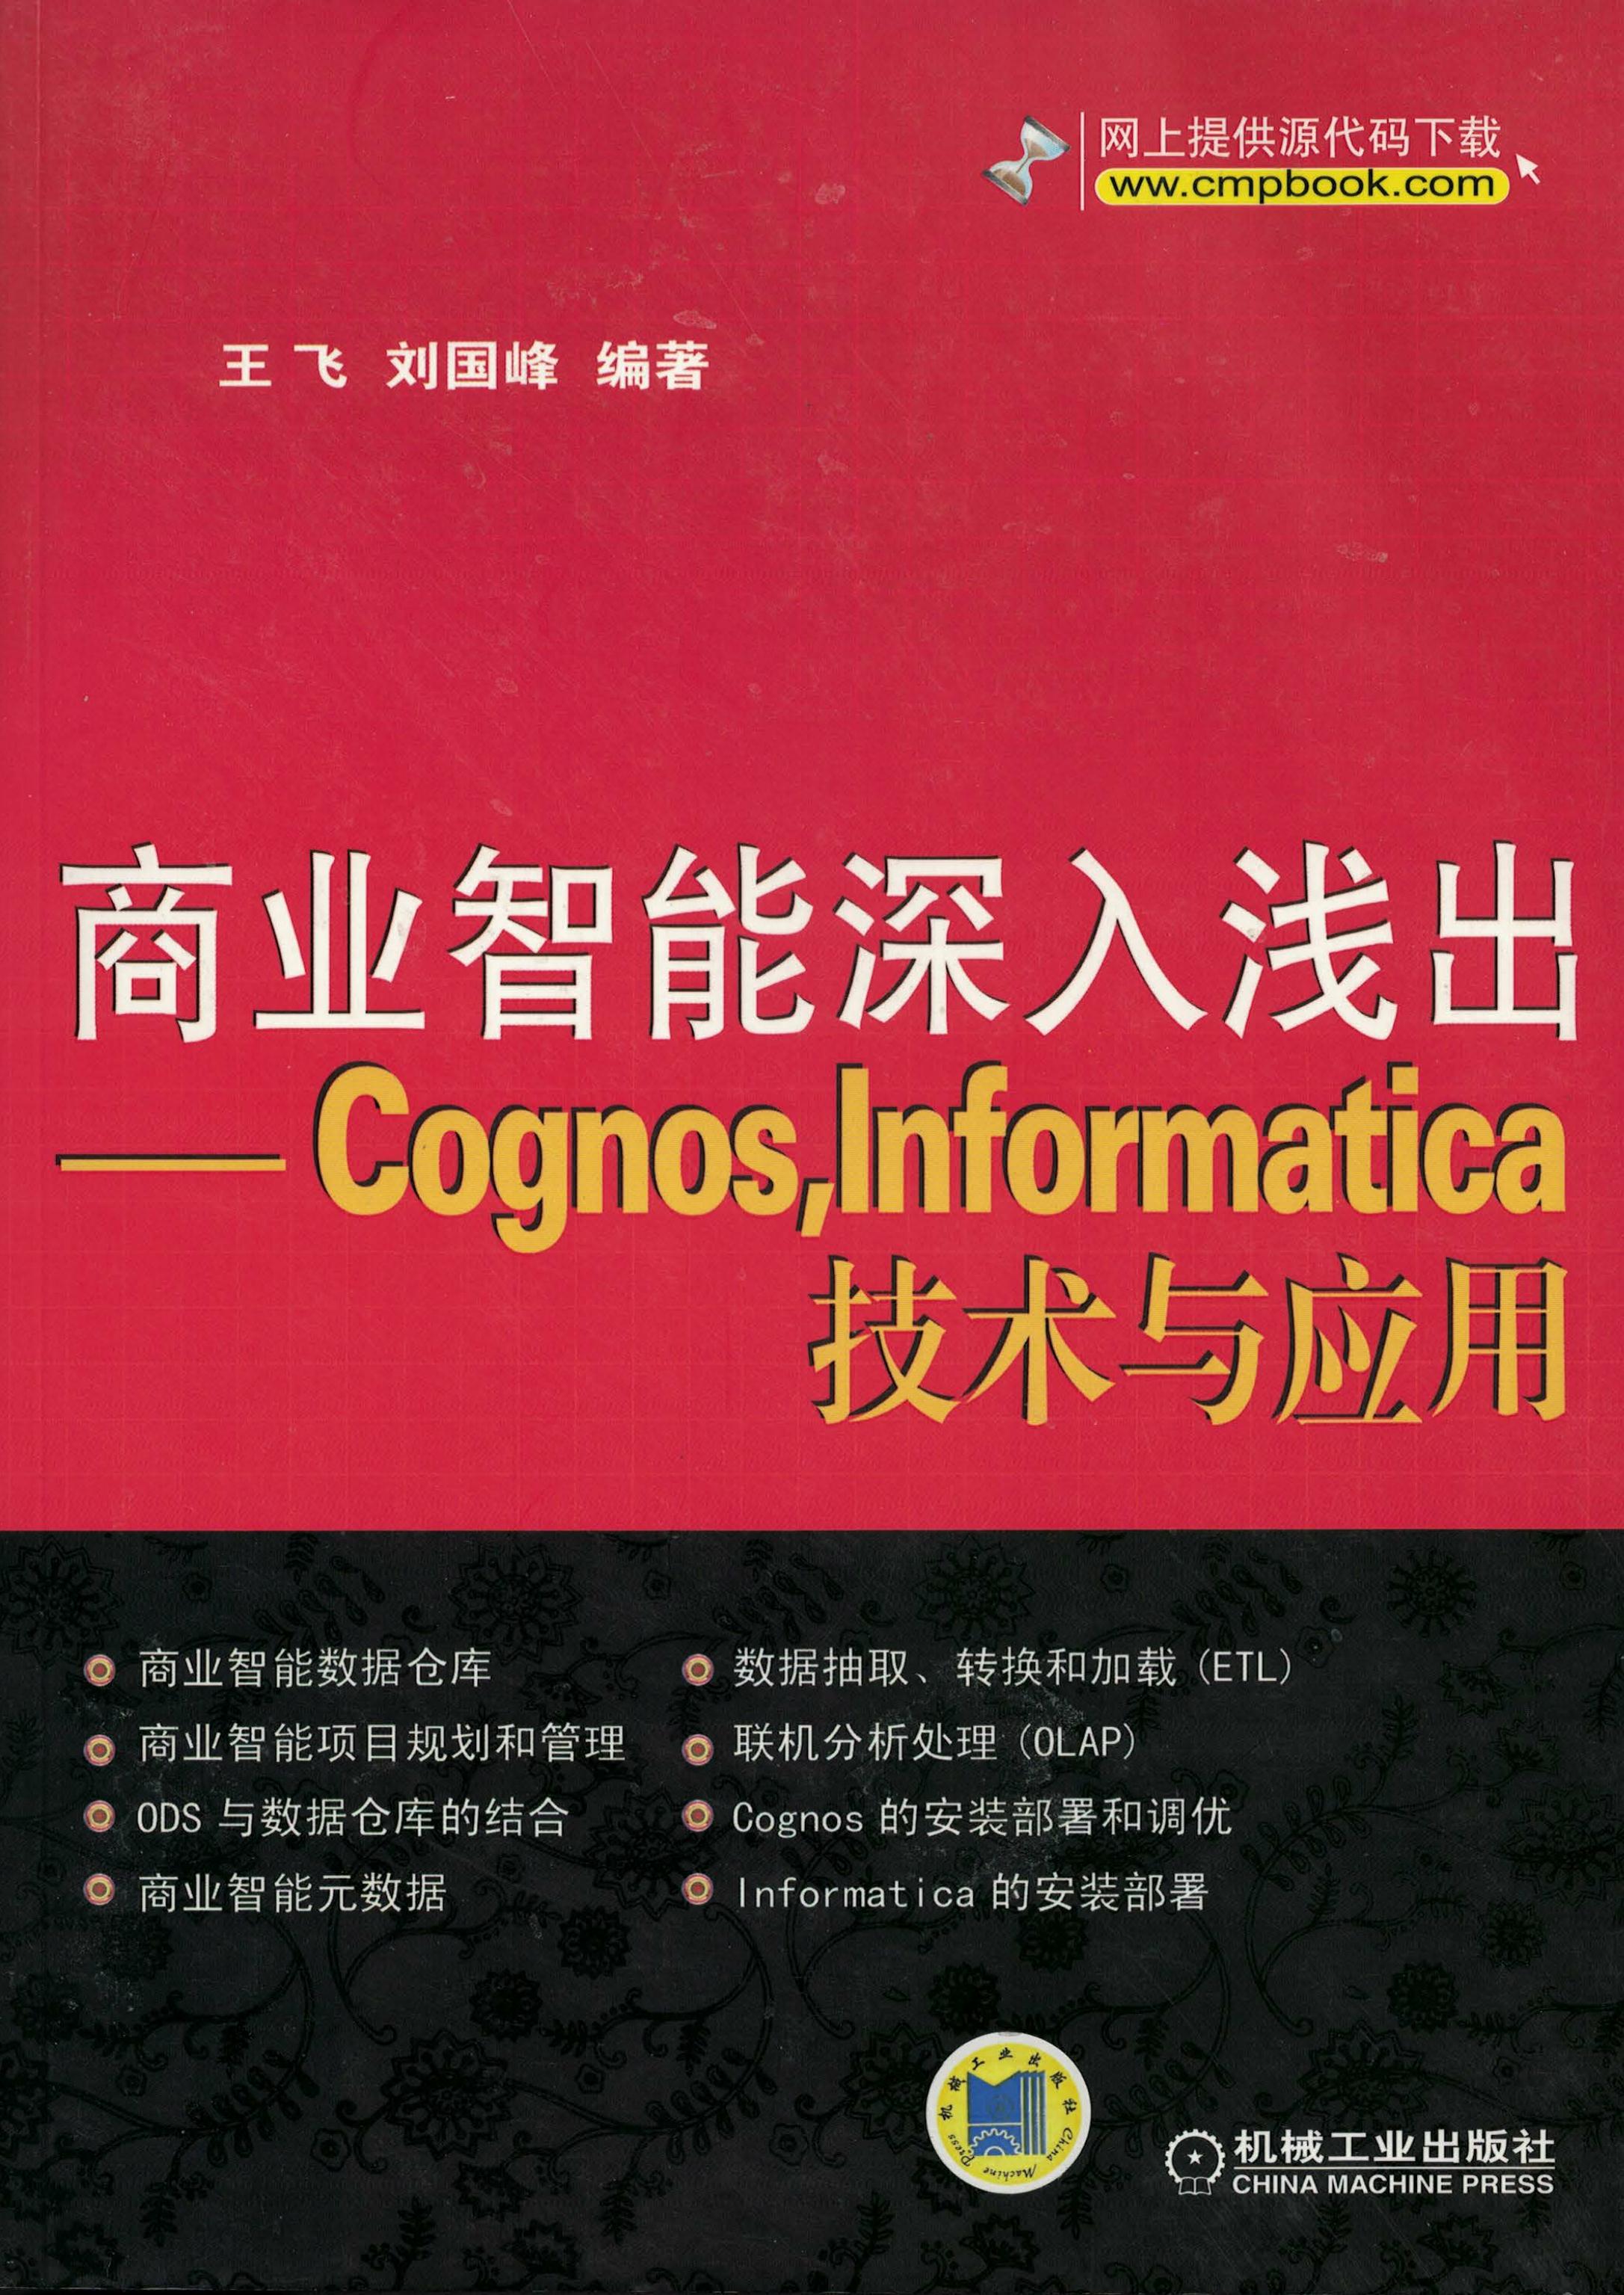 商业智能深入浅出——Cognos，Informatica技术与应用